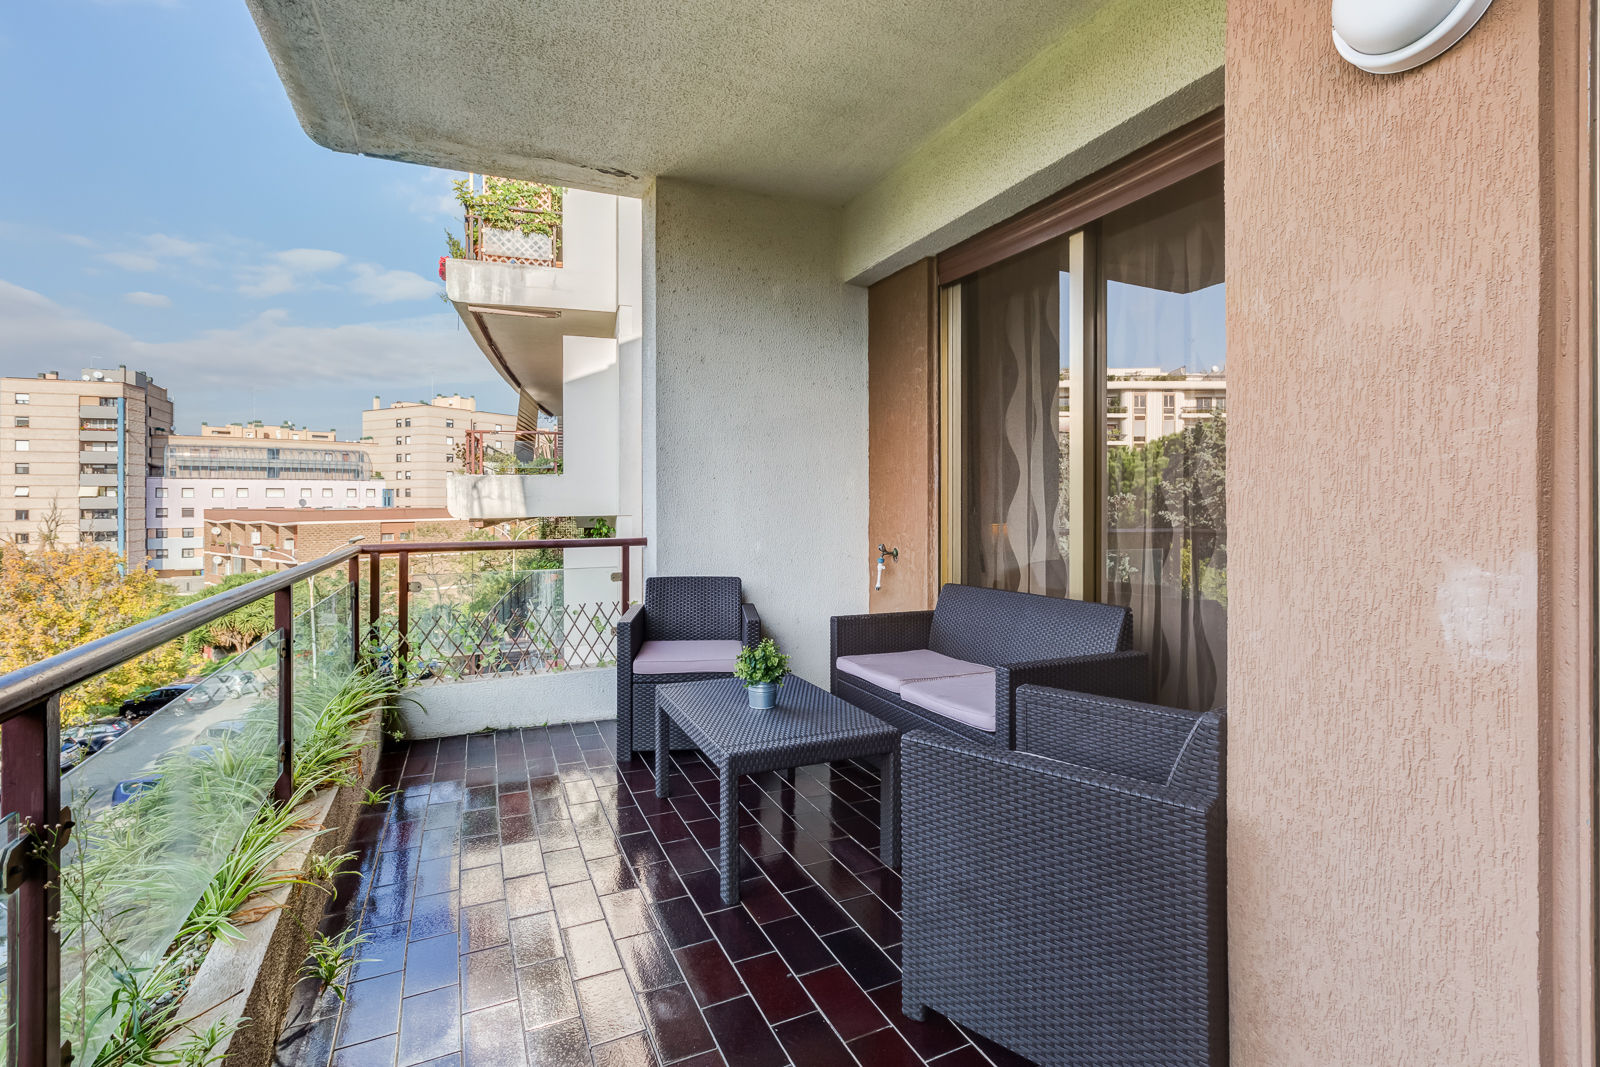 Appartamento Laurentina - Roma, Luca Tranquilli - Fotografo Luca Tranquilli - Fotografo Balcon, Veranda & Terrasse modernes